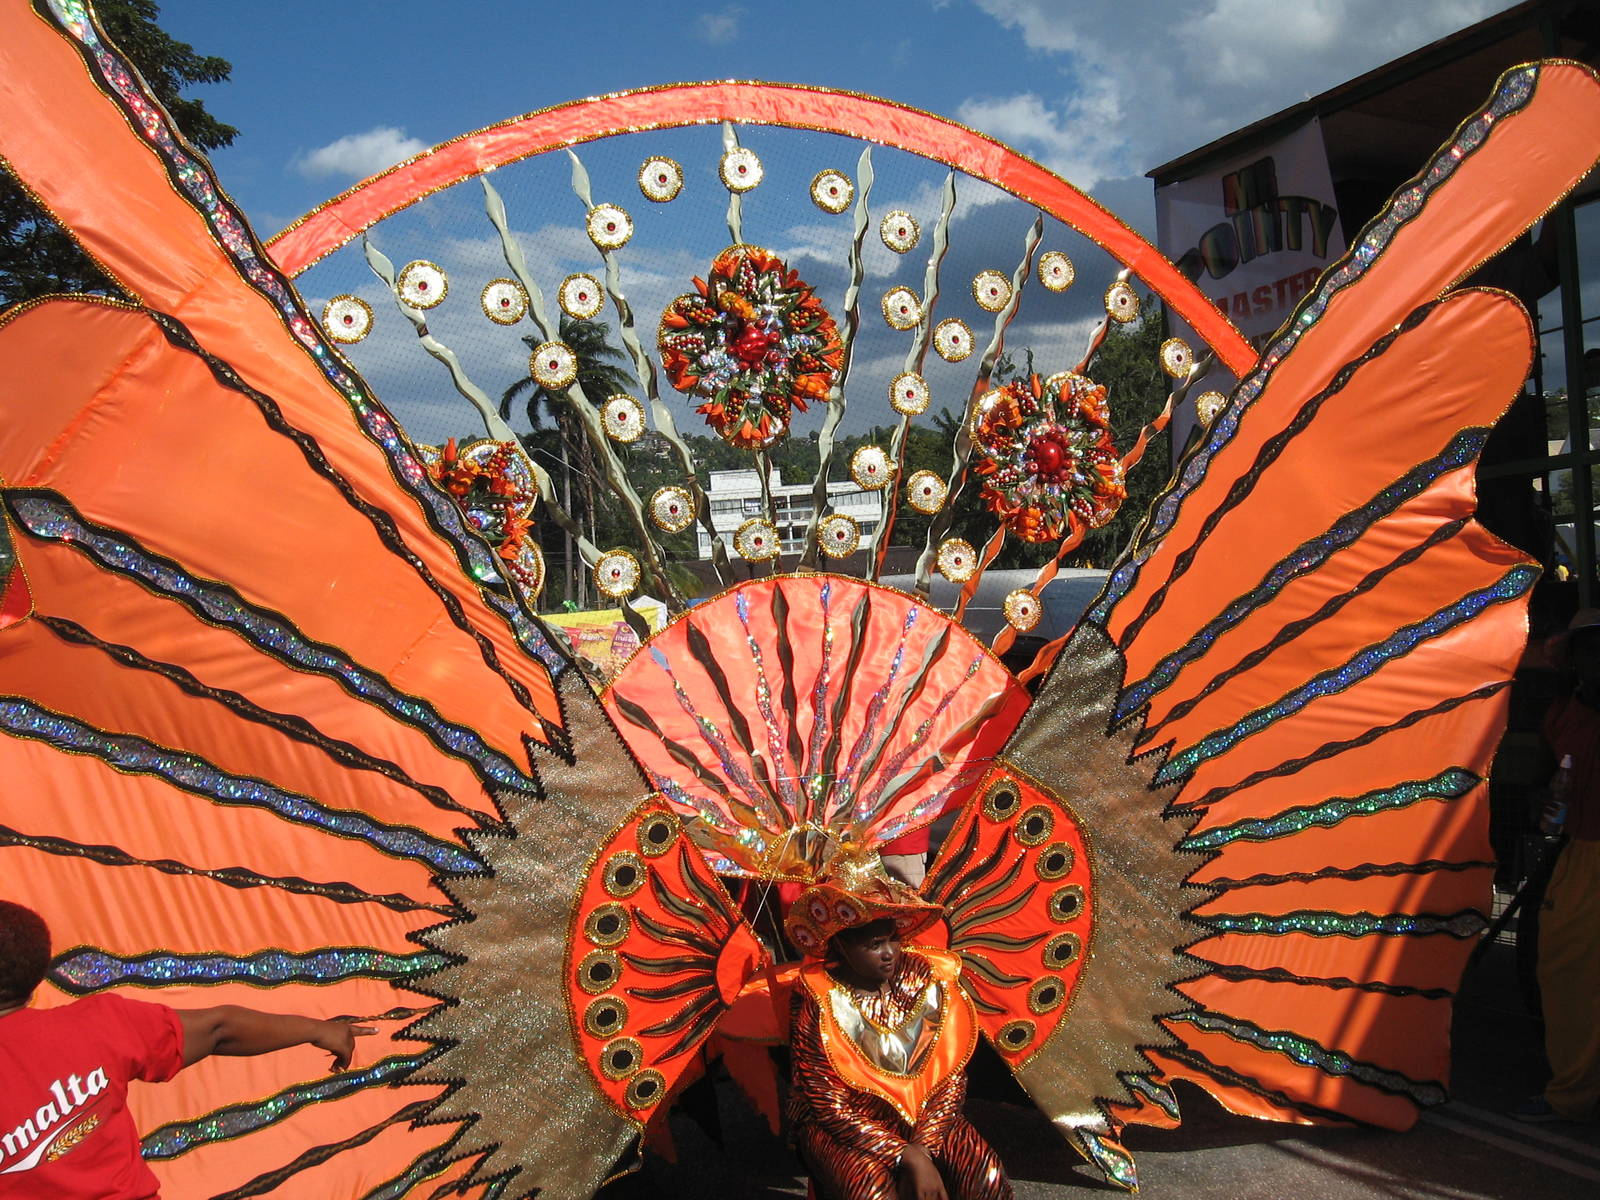 Trinidad Carnival: Destination Trinidad and Tobago